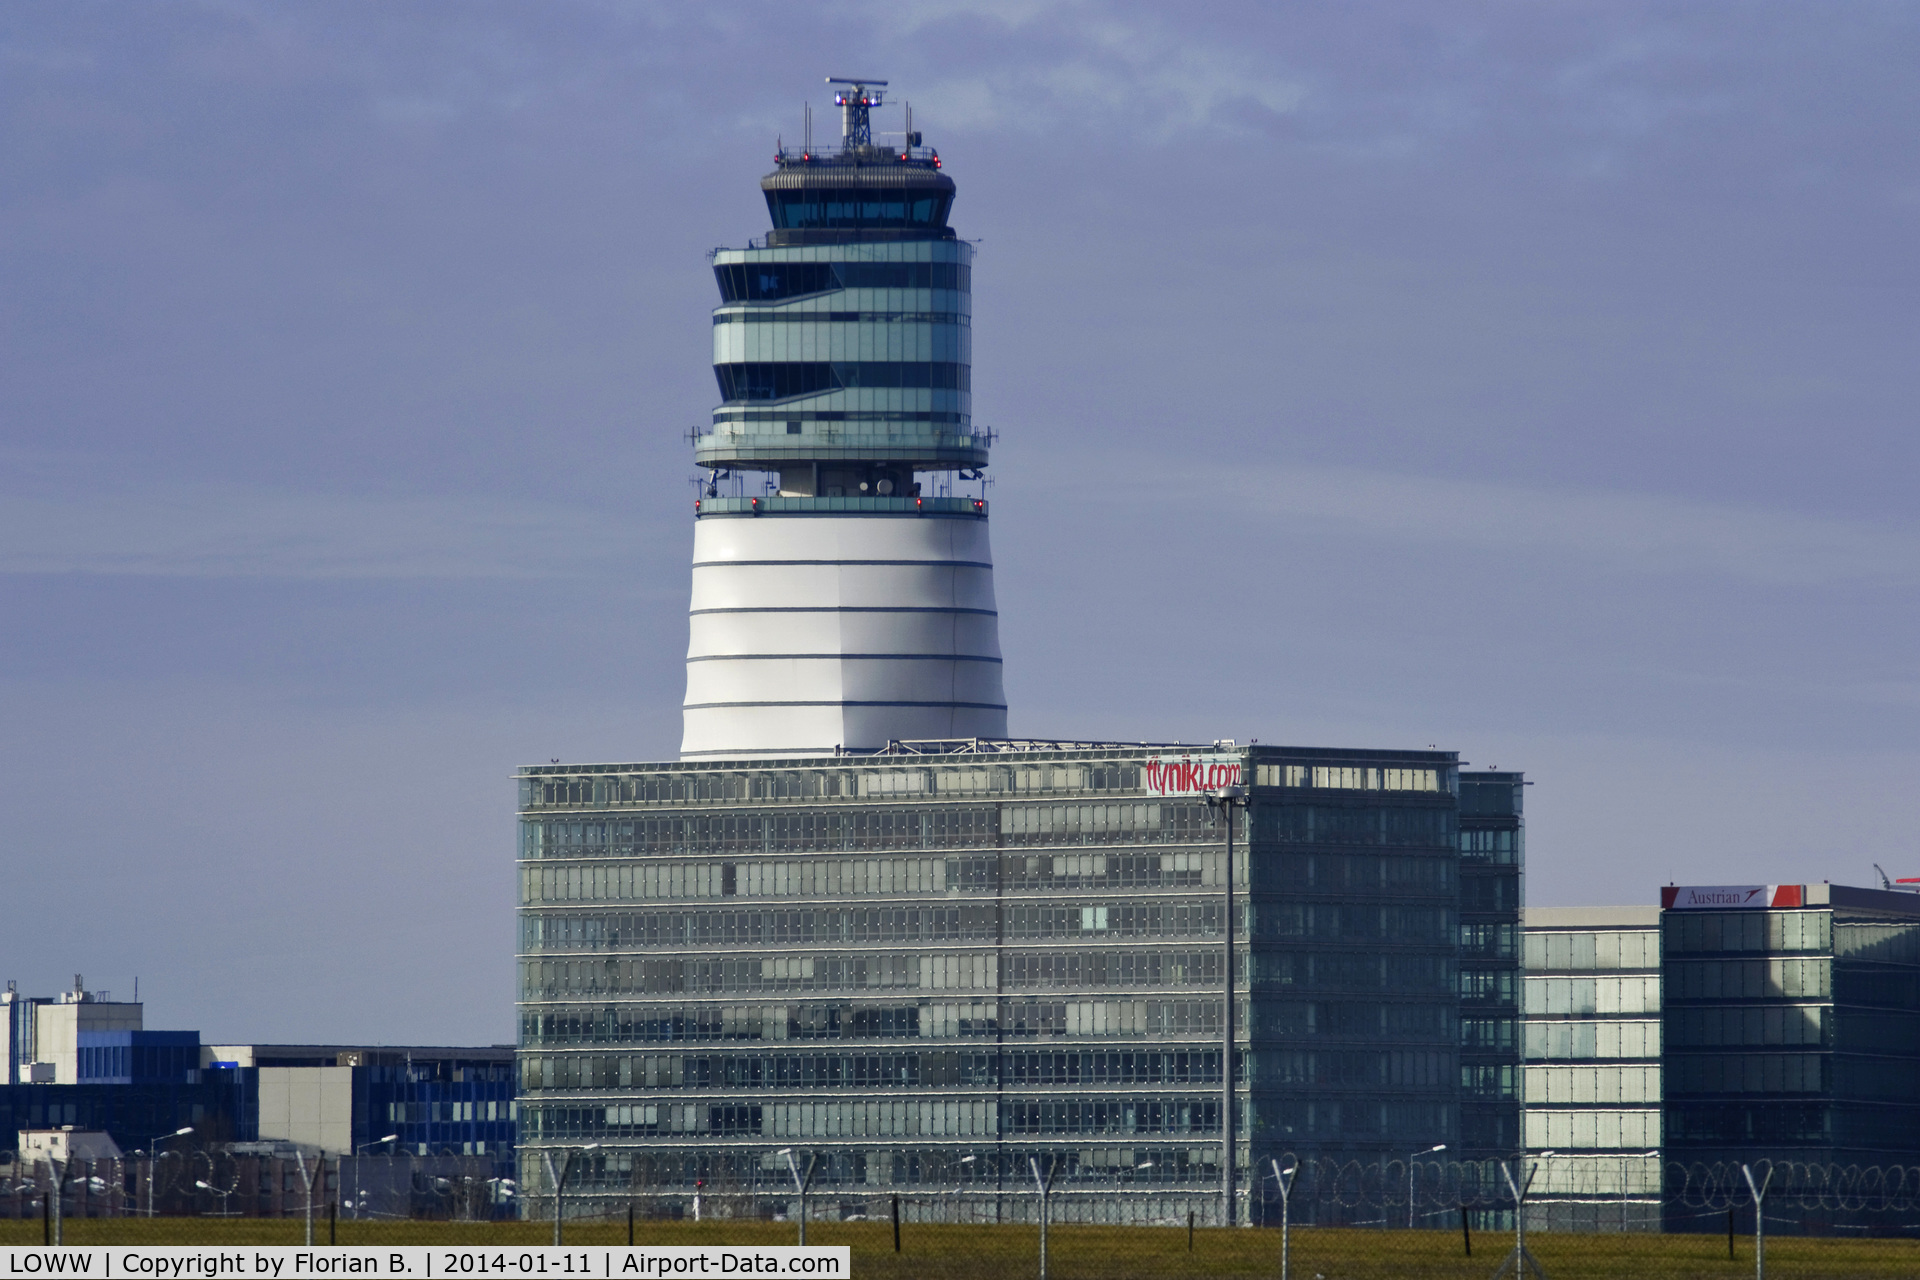 Vienna International Airport, Vienna Austria (LOWW) - Tower at VIE